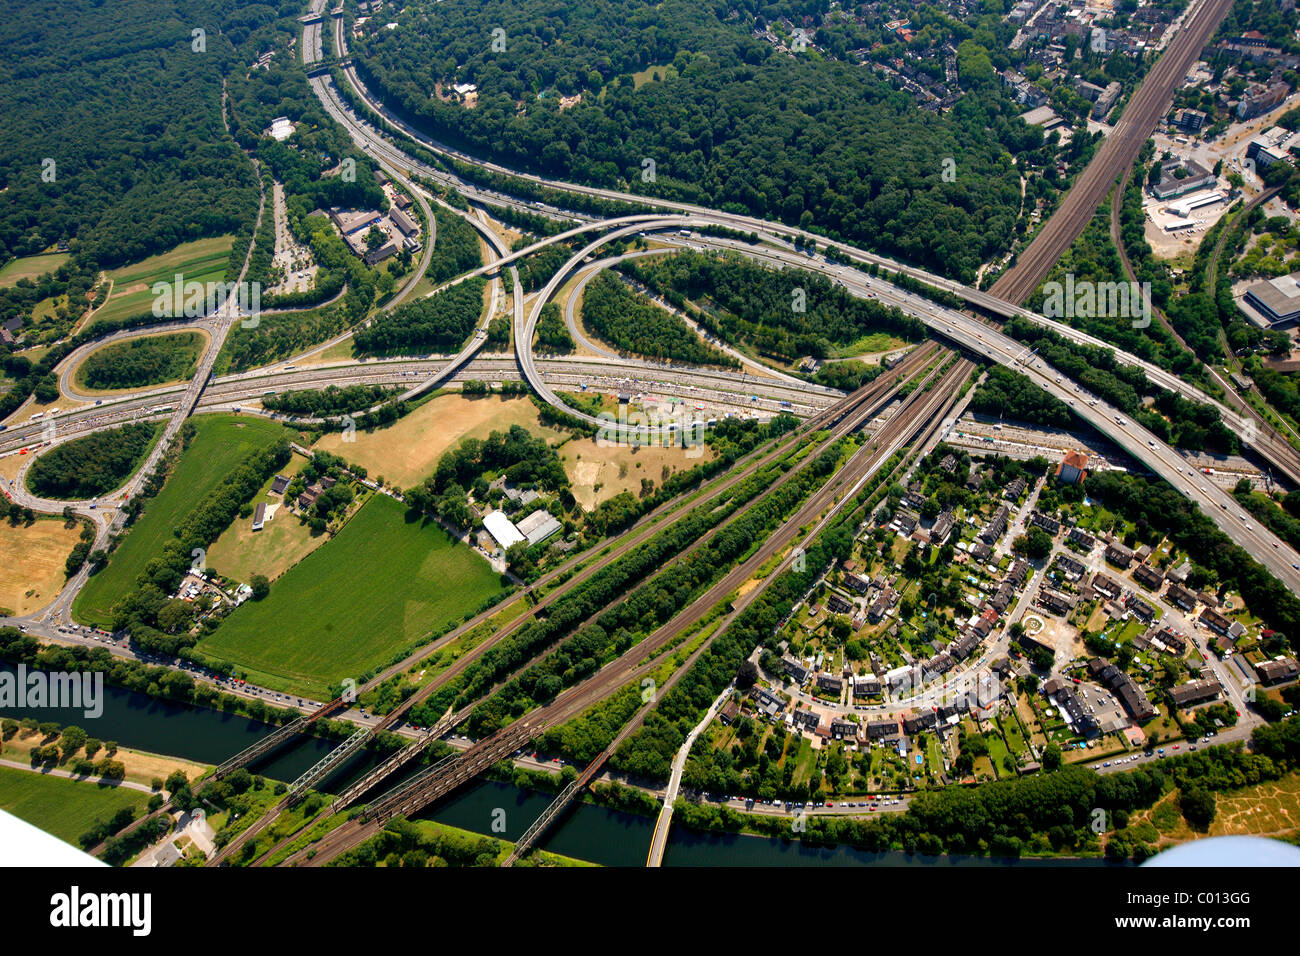 Vista aerea, spaghetti junction, Duisburg Kaiserberg A40 e A3 autostrade, RUHR.2010 Azione still-life sulla A 40 Foto Stock